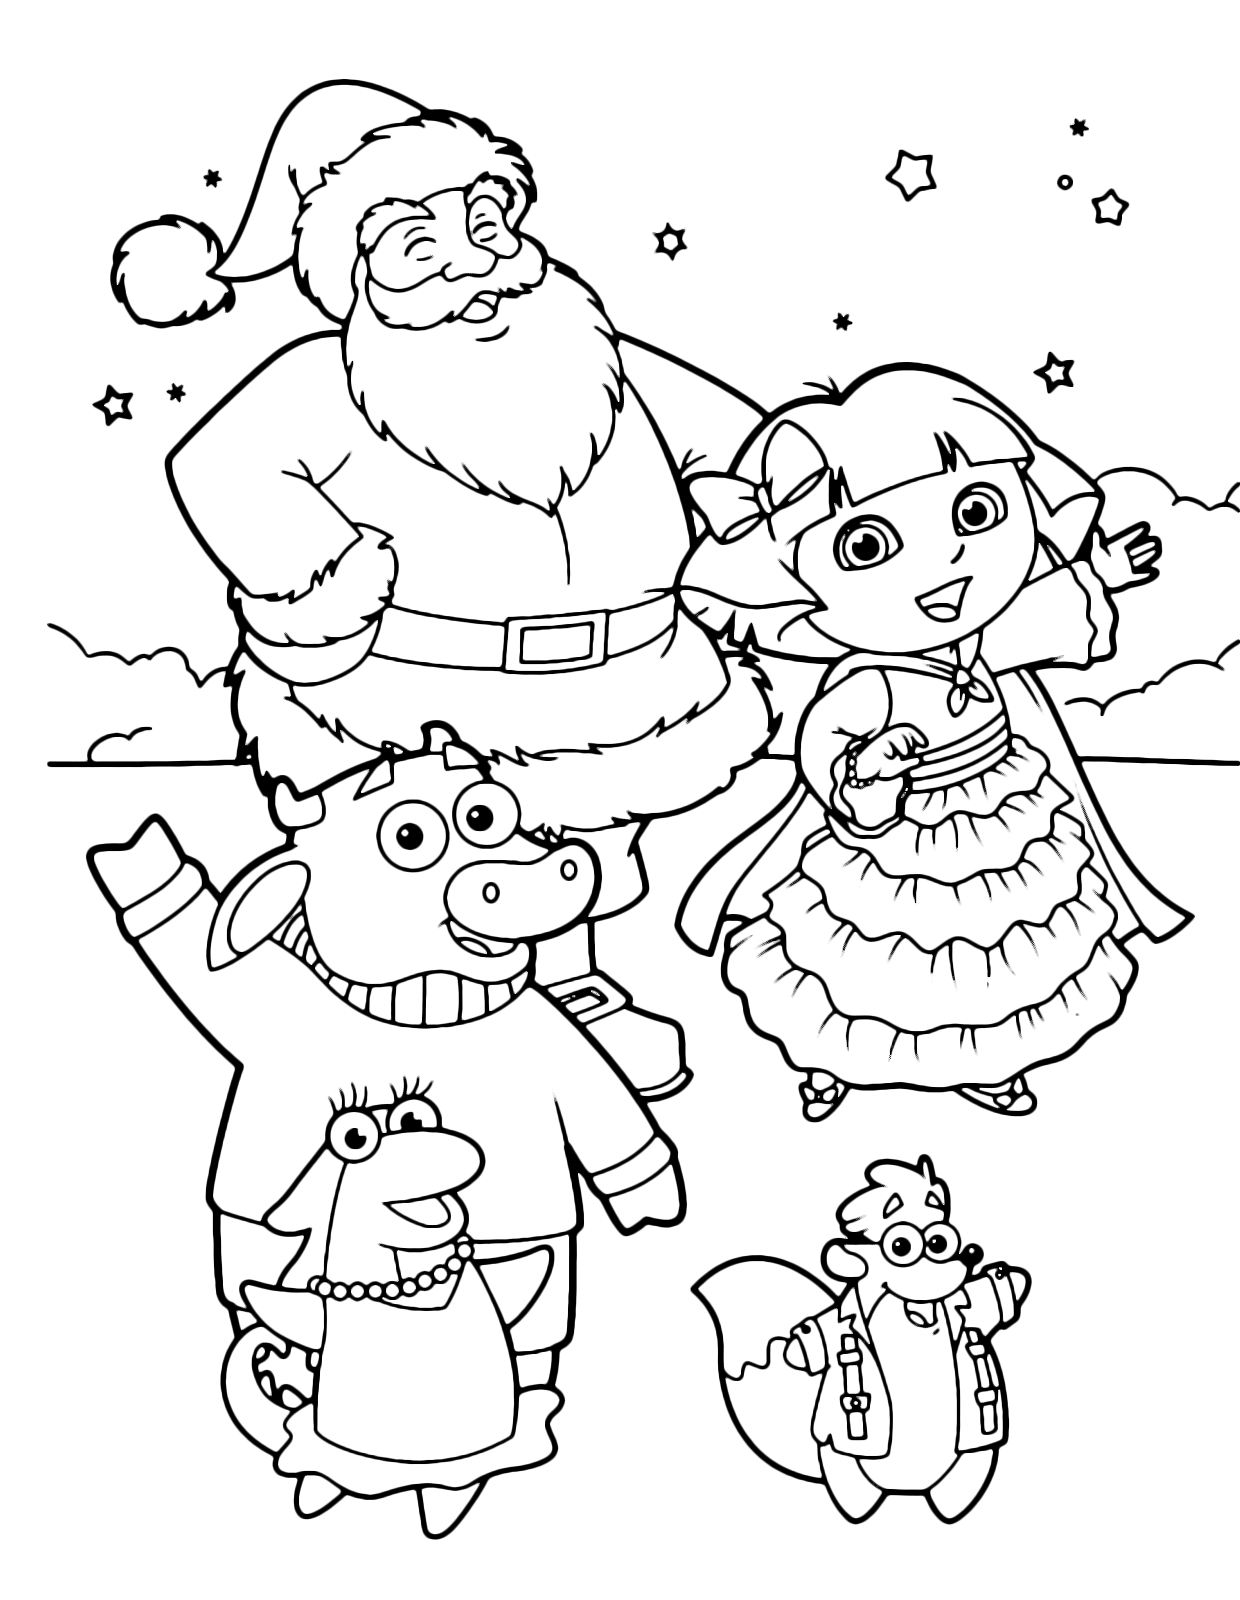 Dora l'esploratrice - Dora e i suoi amici Benny Isa Tyco con Babbo Natale